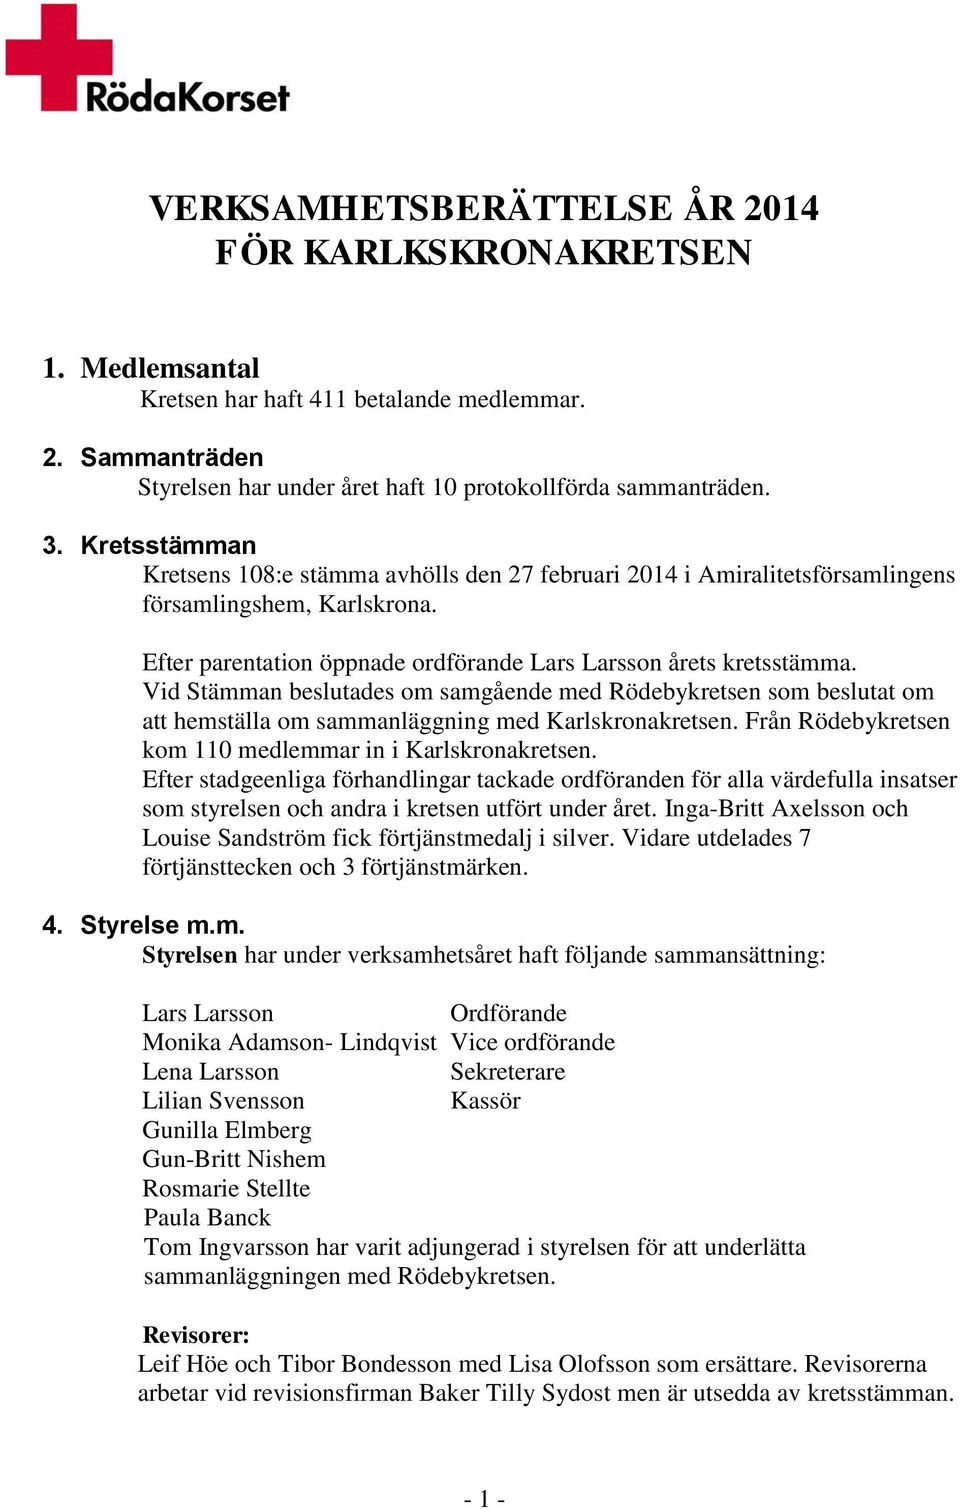 Vid Stämman beslutades om samgående med Rödebykretsen som beslutat om att hemställa om sammanläggning med Karlskronakretsen. Från Rödebykretsen kom 110 medlemmar in i Karlskronakretsen.